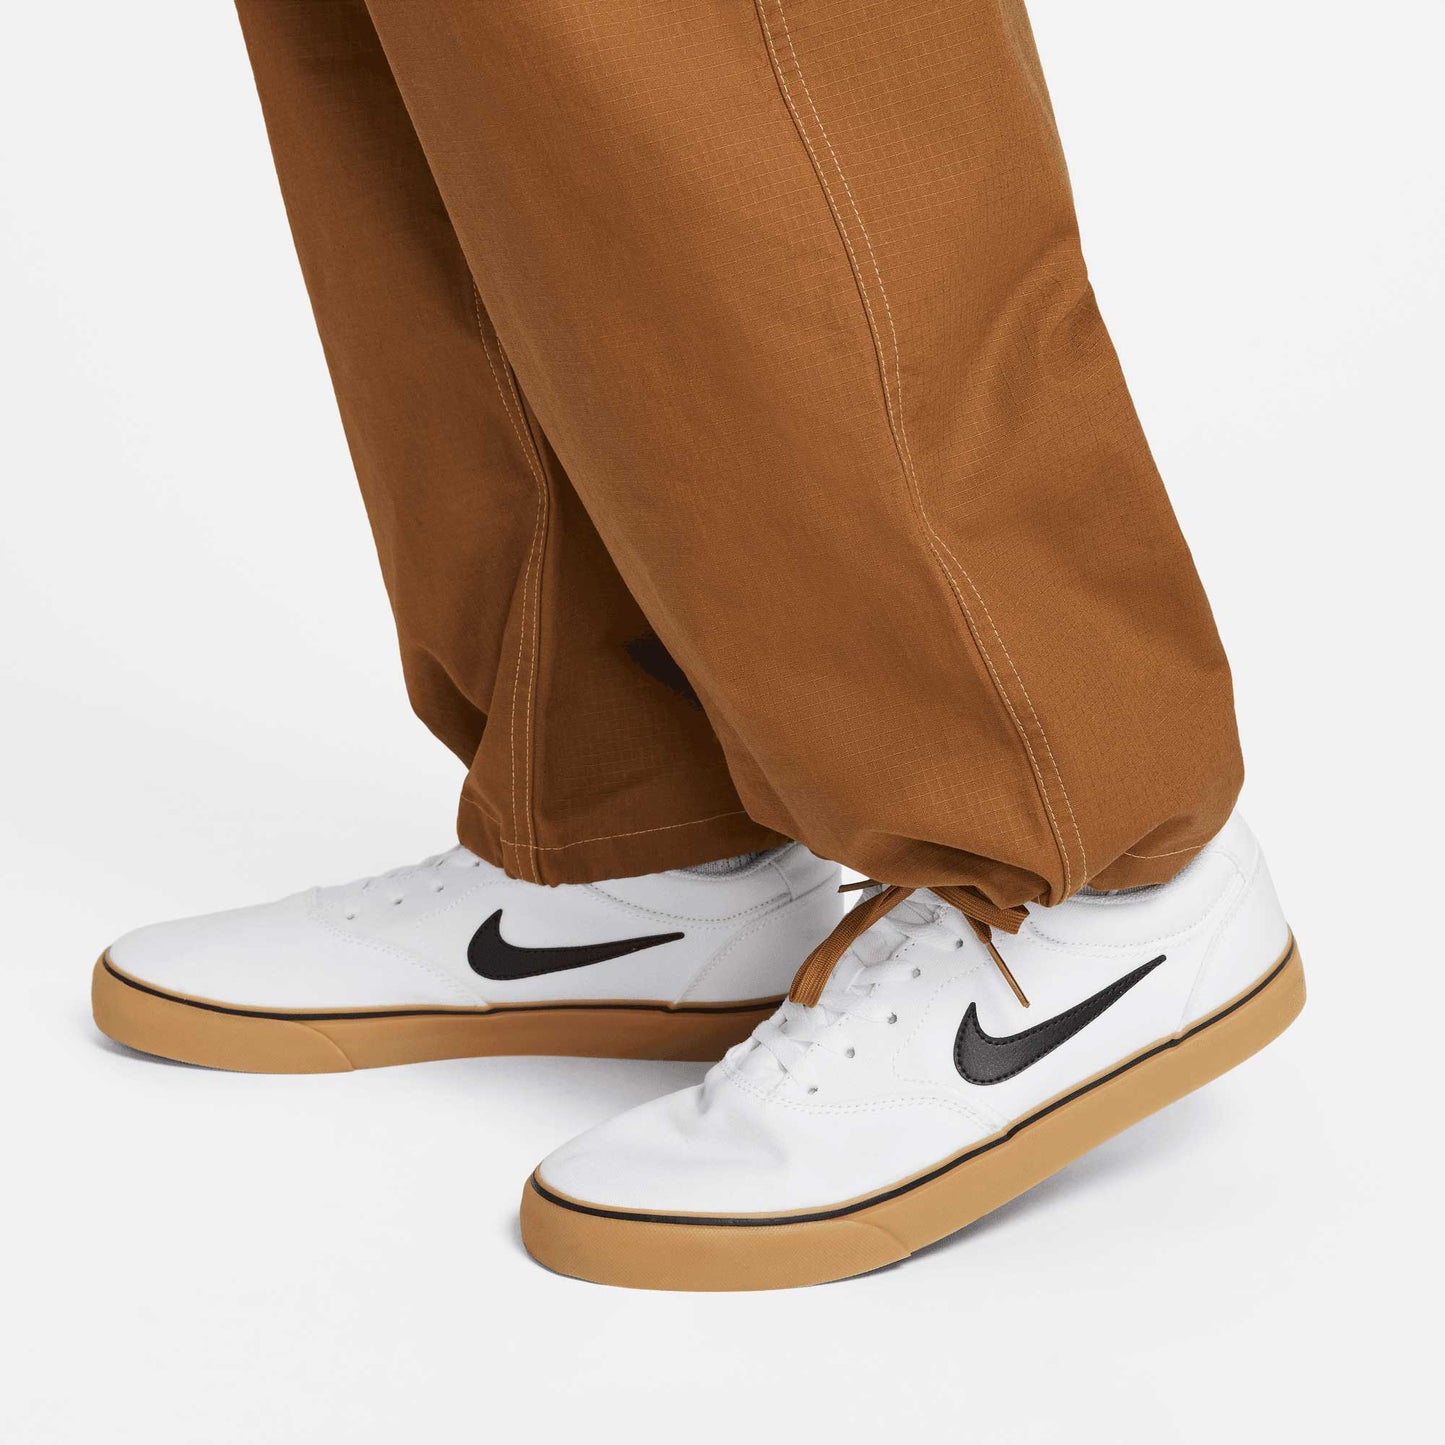 Nike SB Kearny Cargo Pants, ale brown/white - Tiki Room Skateboards - 8